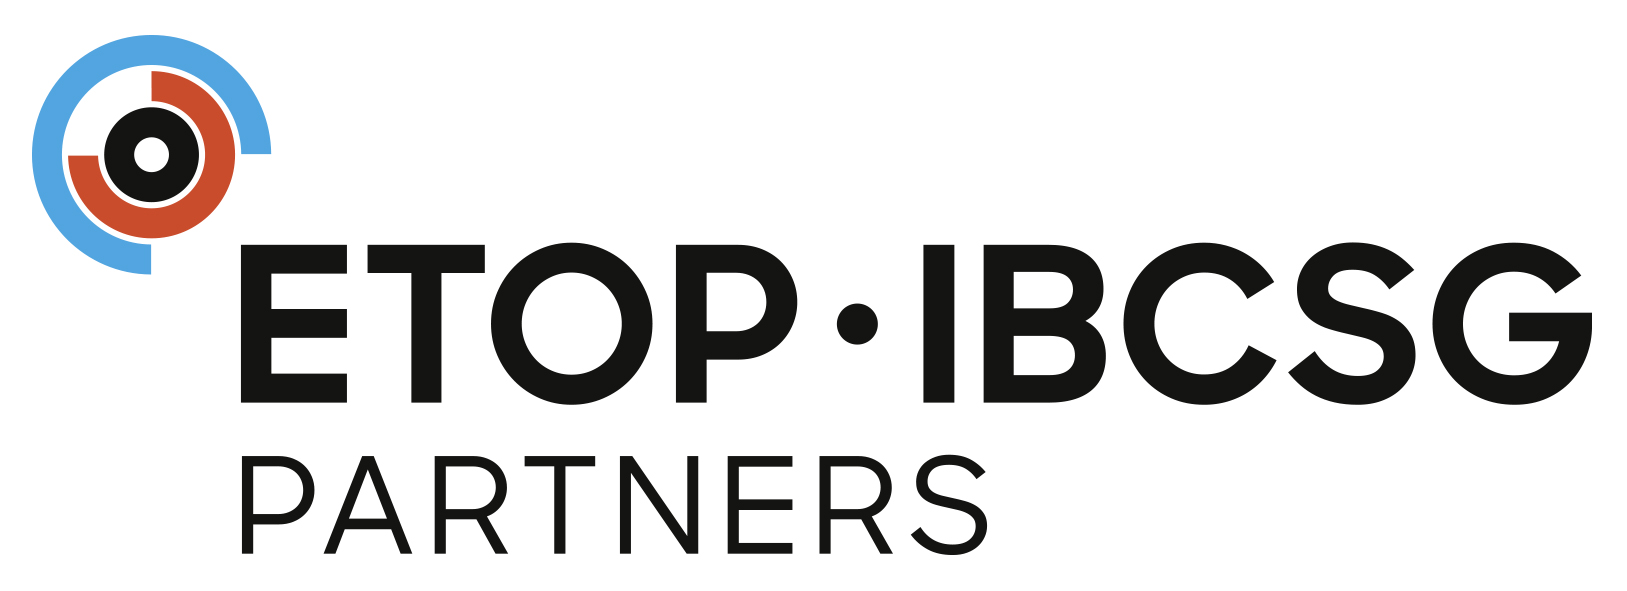 ETOP IBCSG Partners RGB